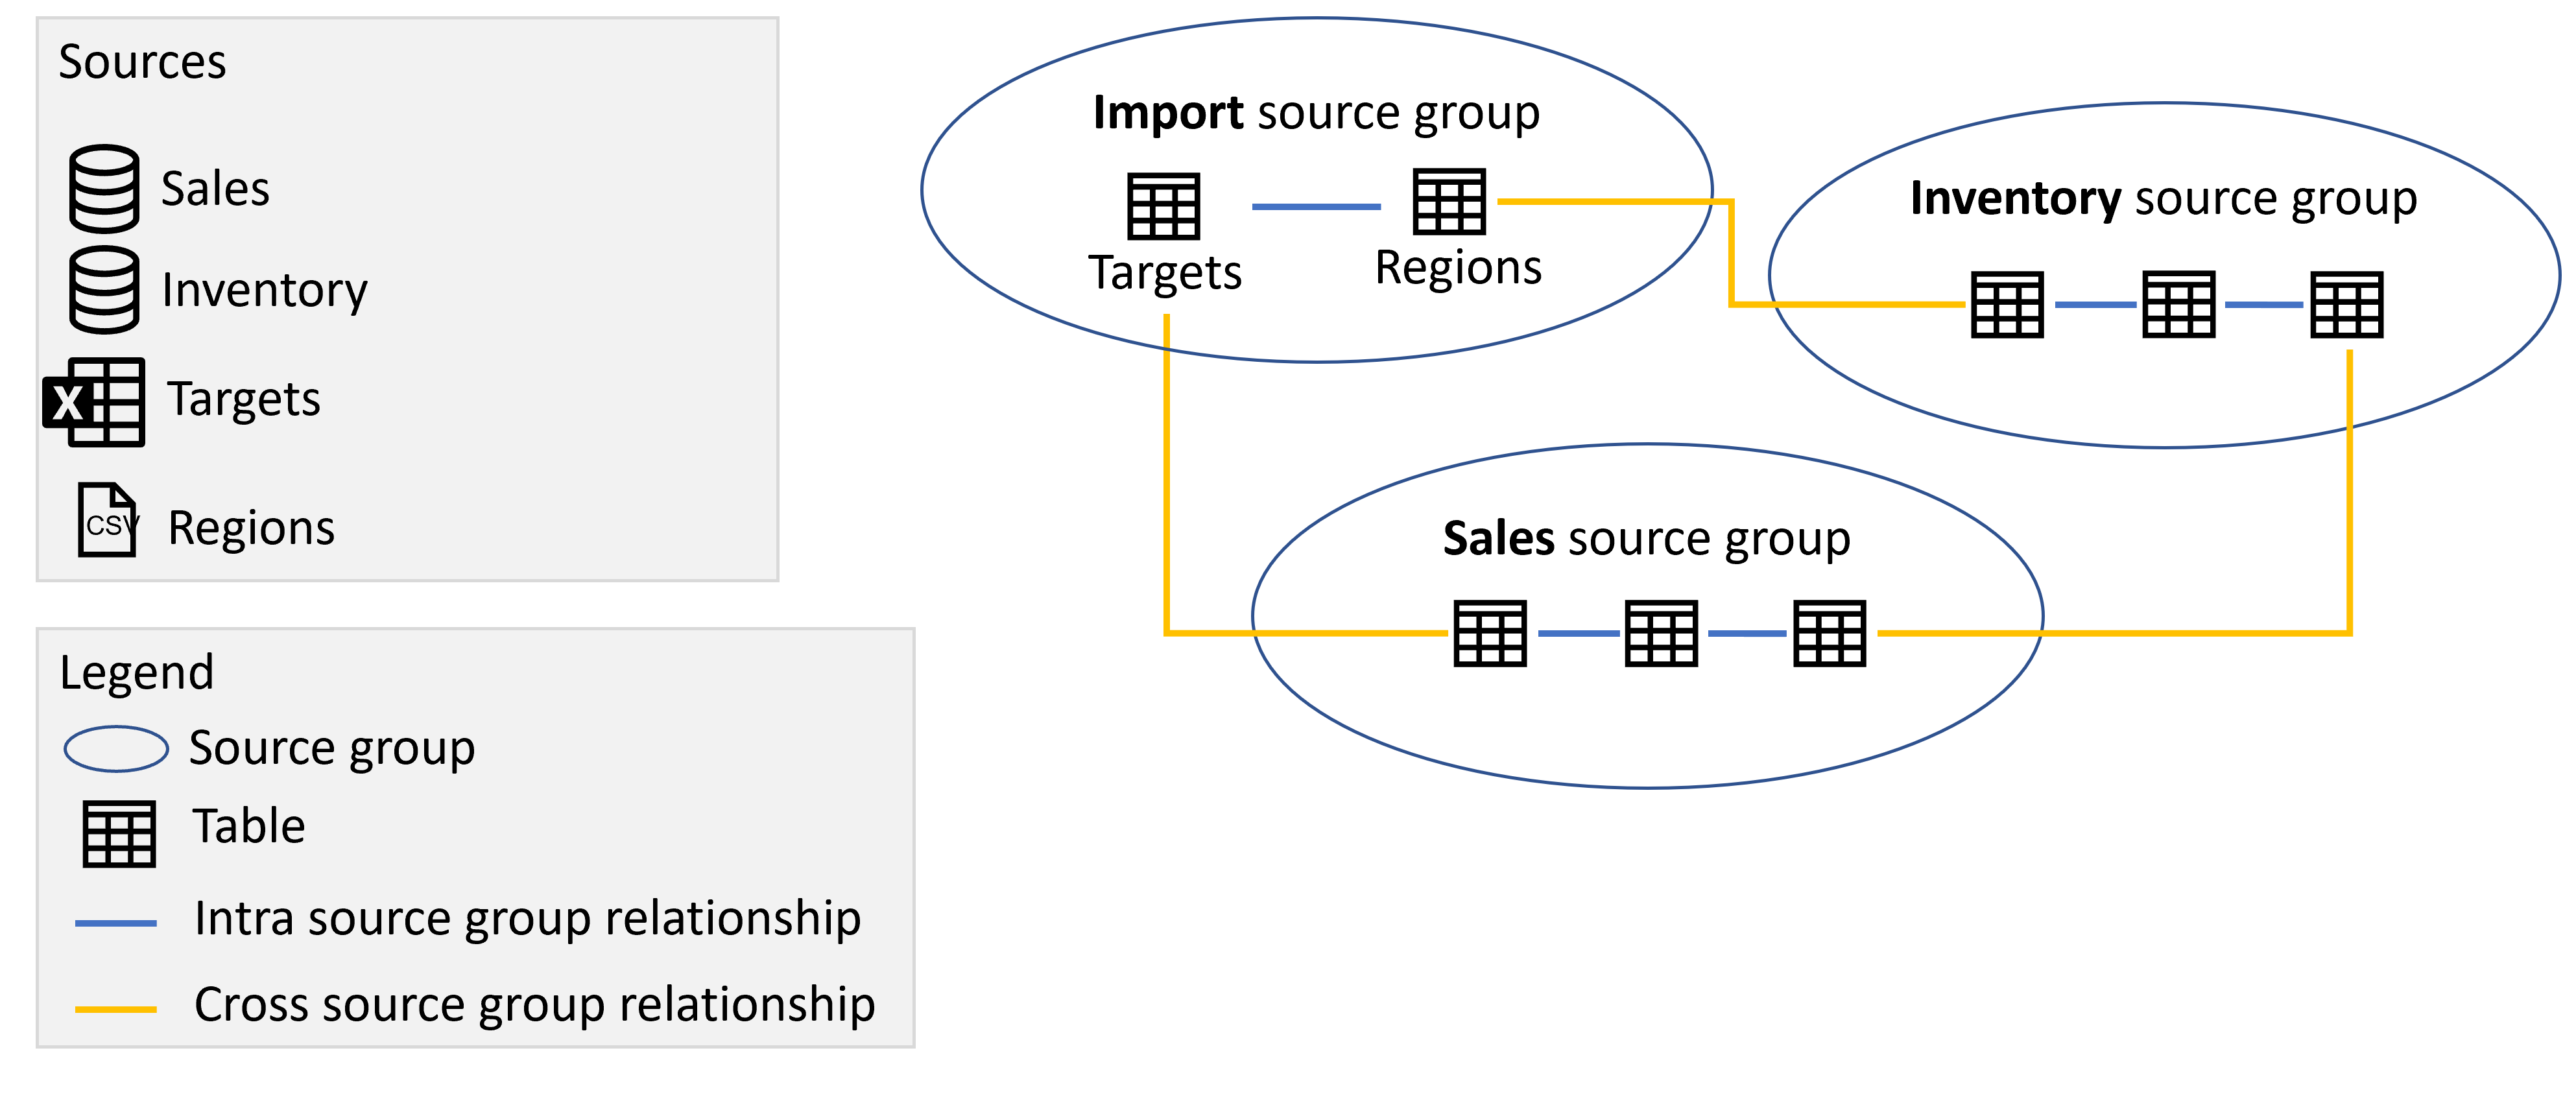 Diagramme illustrant les groupes de sources Importation, Ventes in Inventaire qui contiennent les tables issues des sources respectives et les relations entre les groupes de sources, comme décrit précédemment.